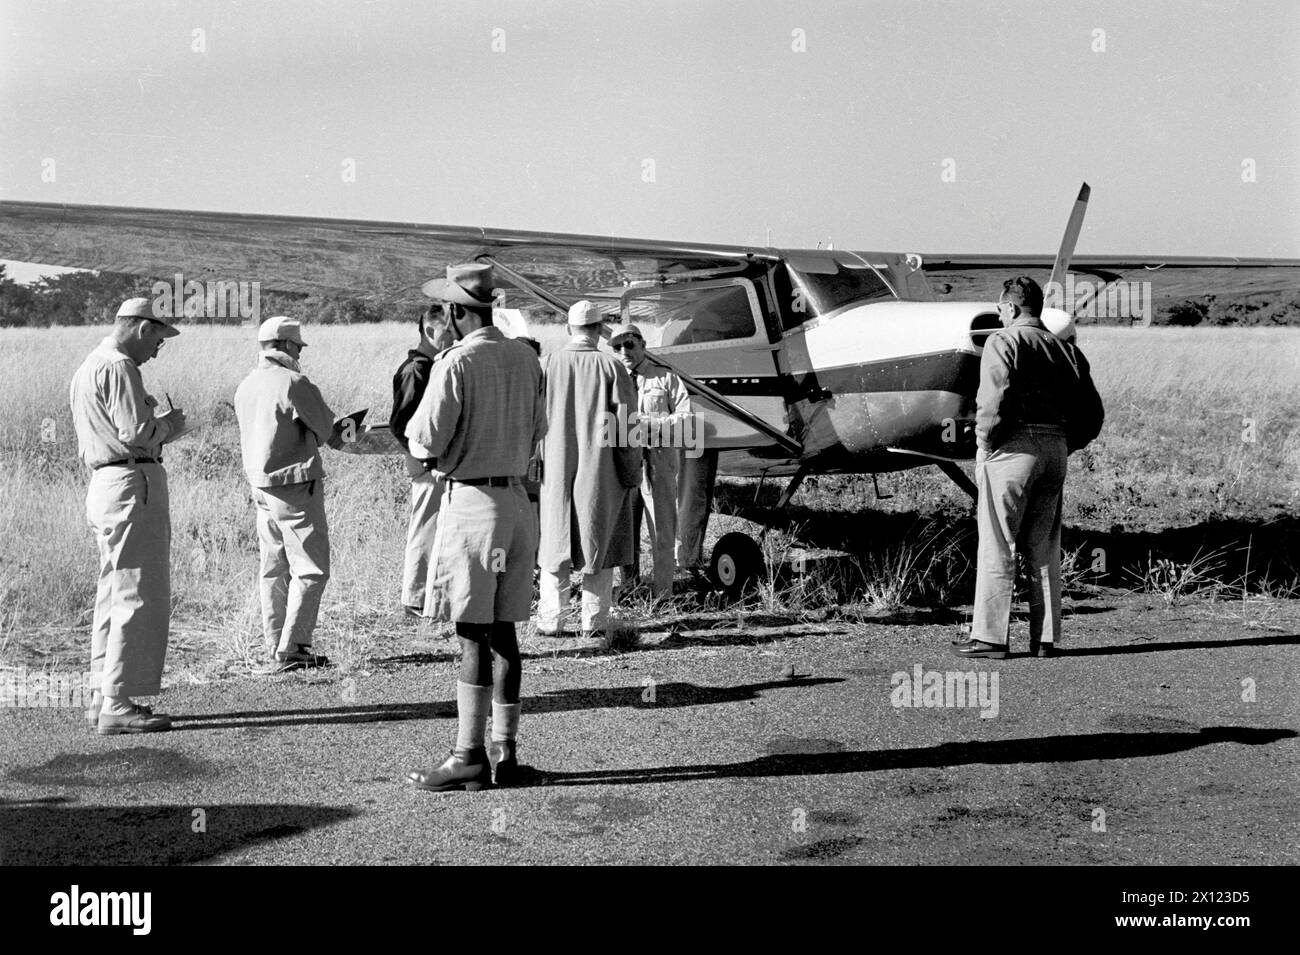 Passagiere bereiten sich auf den Einstieg in das Cessna 170 Light Airplane, Flugzeug oder Flugzeug (hergestellt zwischen 1948 und 1956) auf dem Flugplatz oder Flughafen von Fort Dauphin Madagaskar vor. Vintage- oder Historic Schwarzweiß- oder Schwarzweißbild c1960. Stockfoto